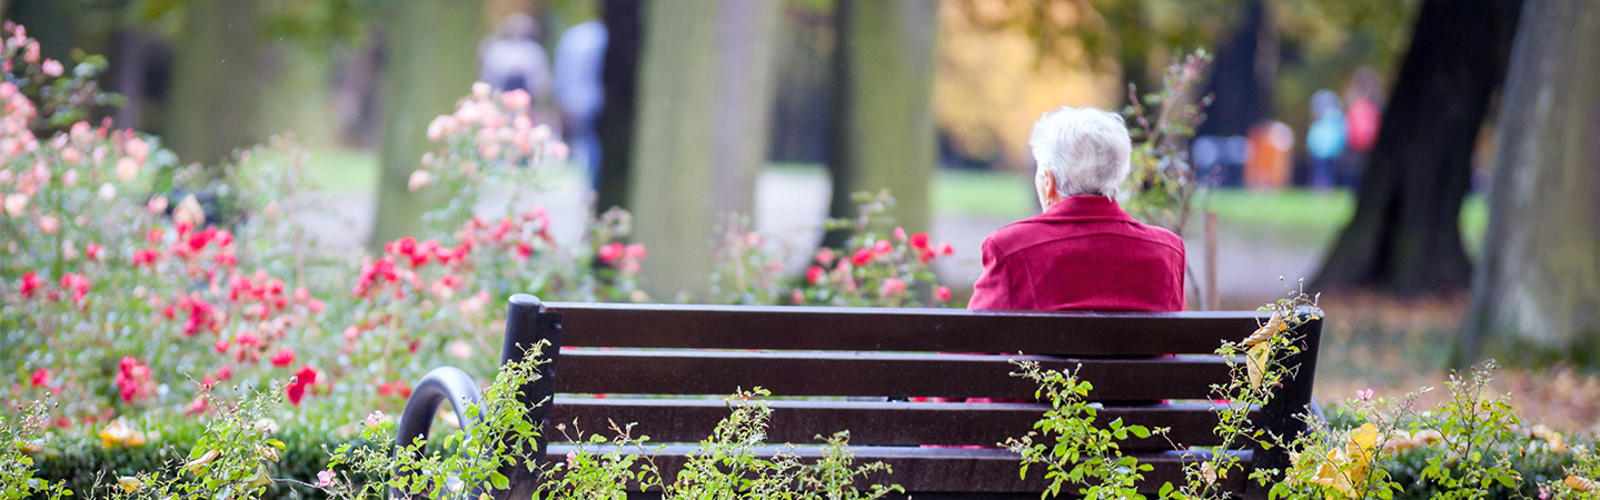 En äldre kvinna fotograferad bakifrån, sitter ensam på en parkbänk